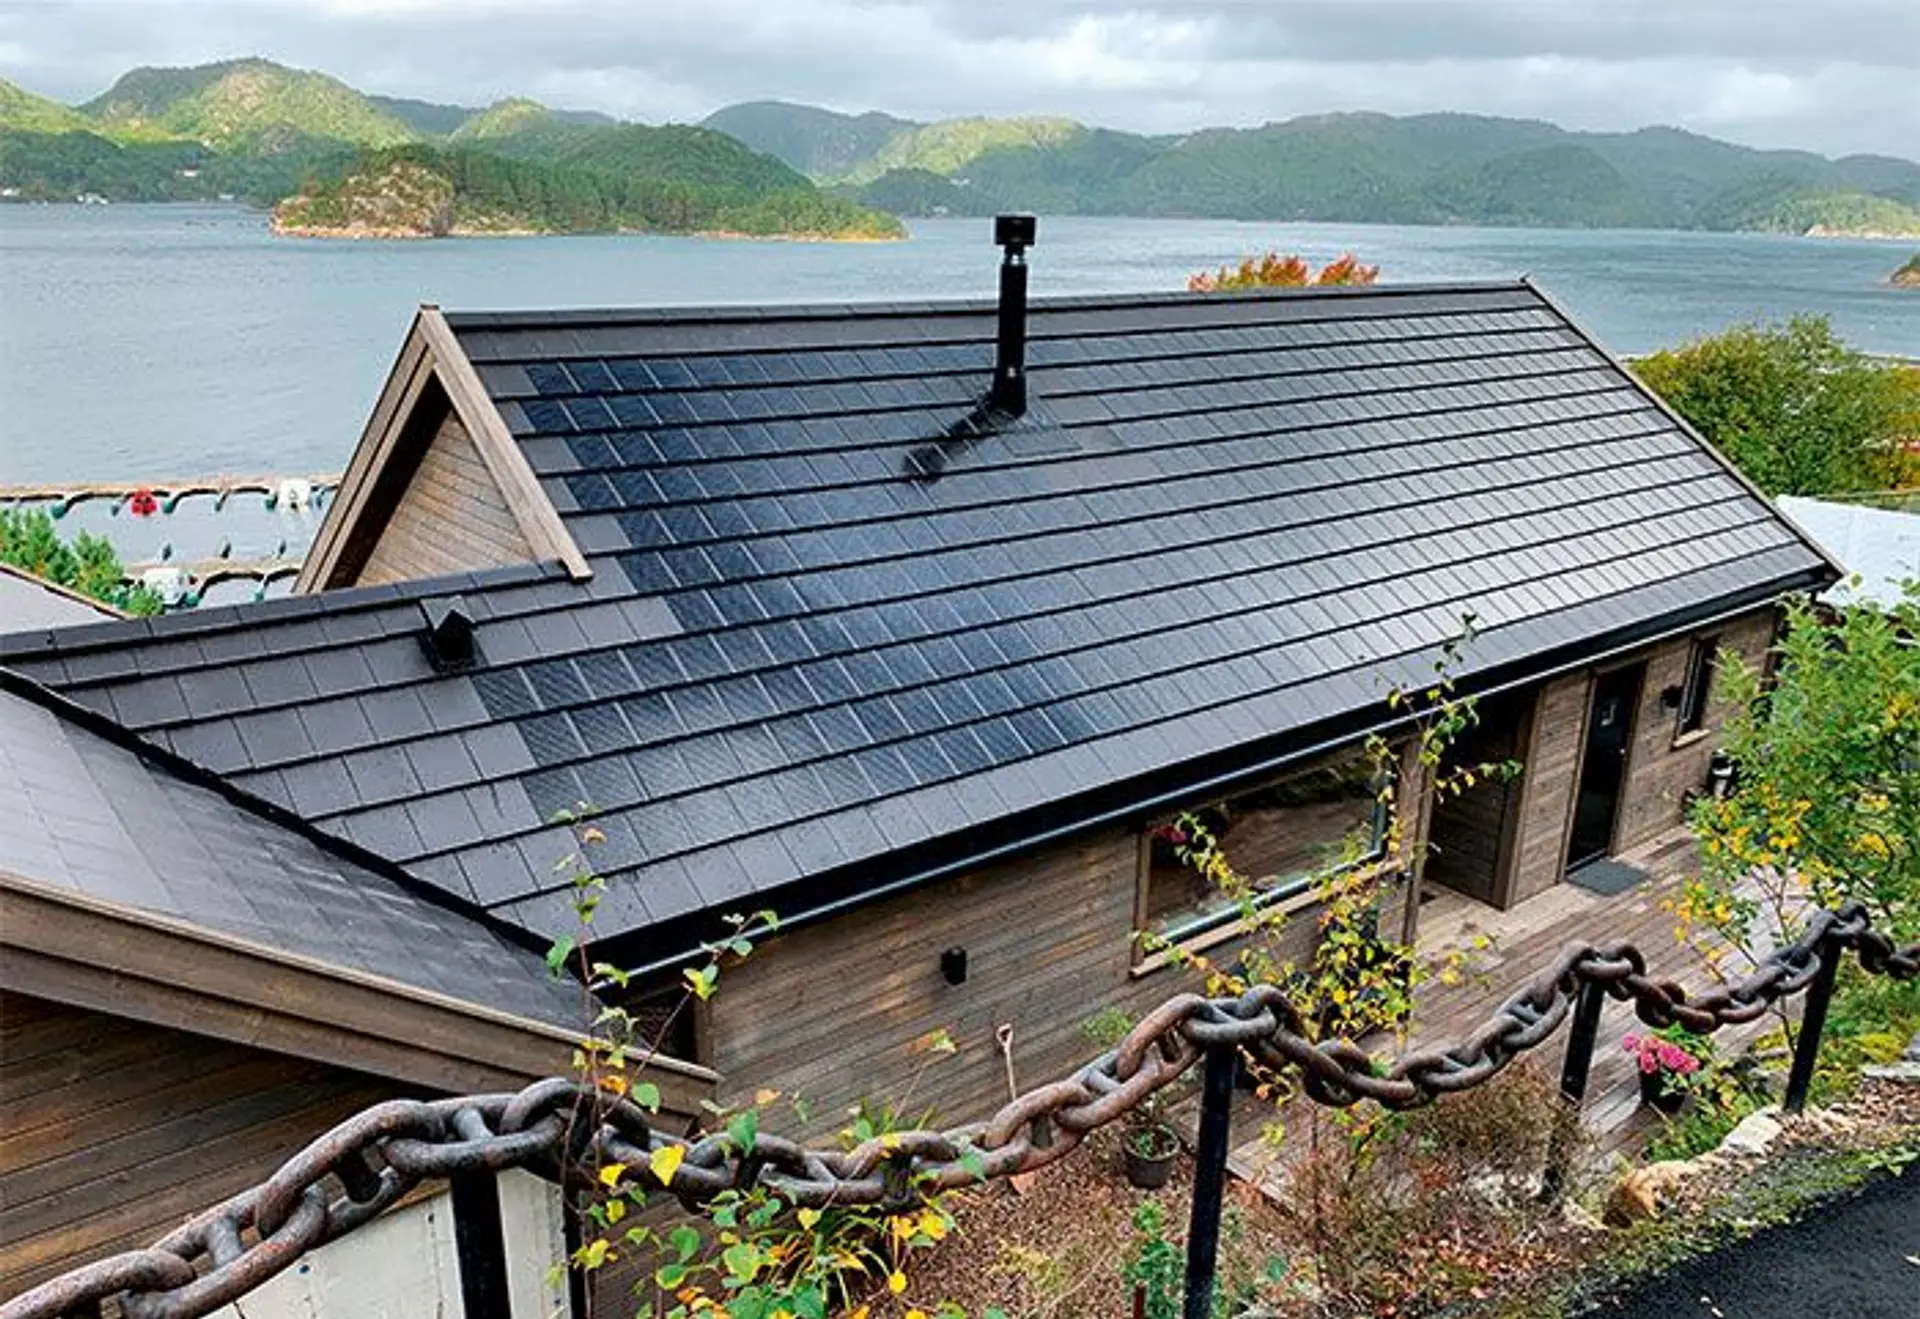 Sjønært hus med integrerte solcellestein på taket